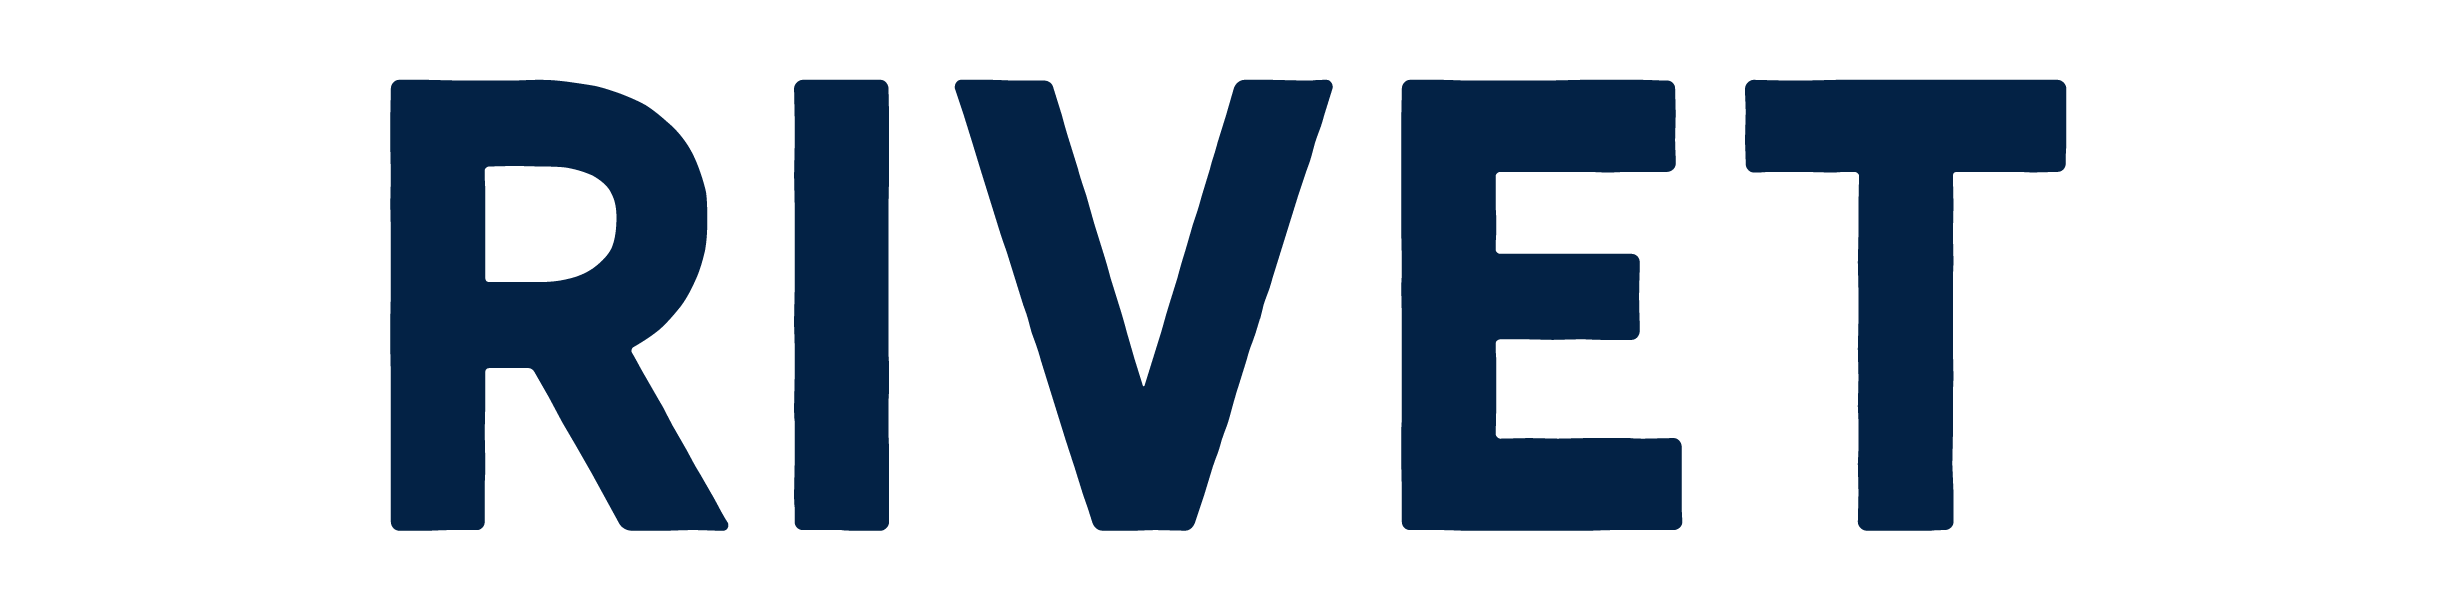 RIVET Work logo blue